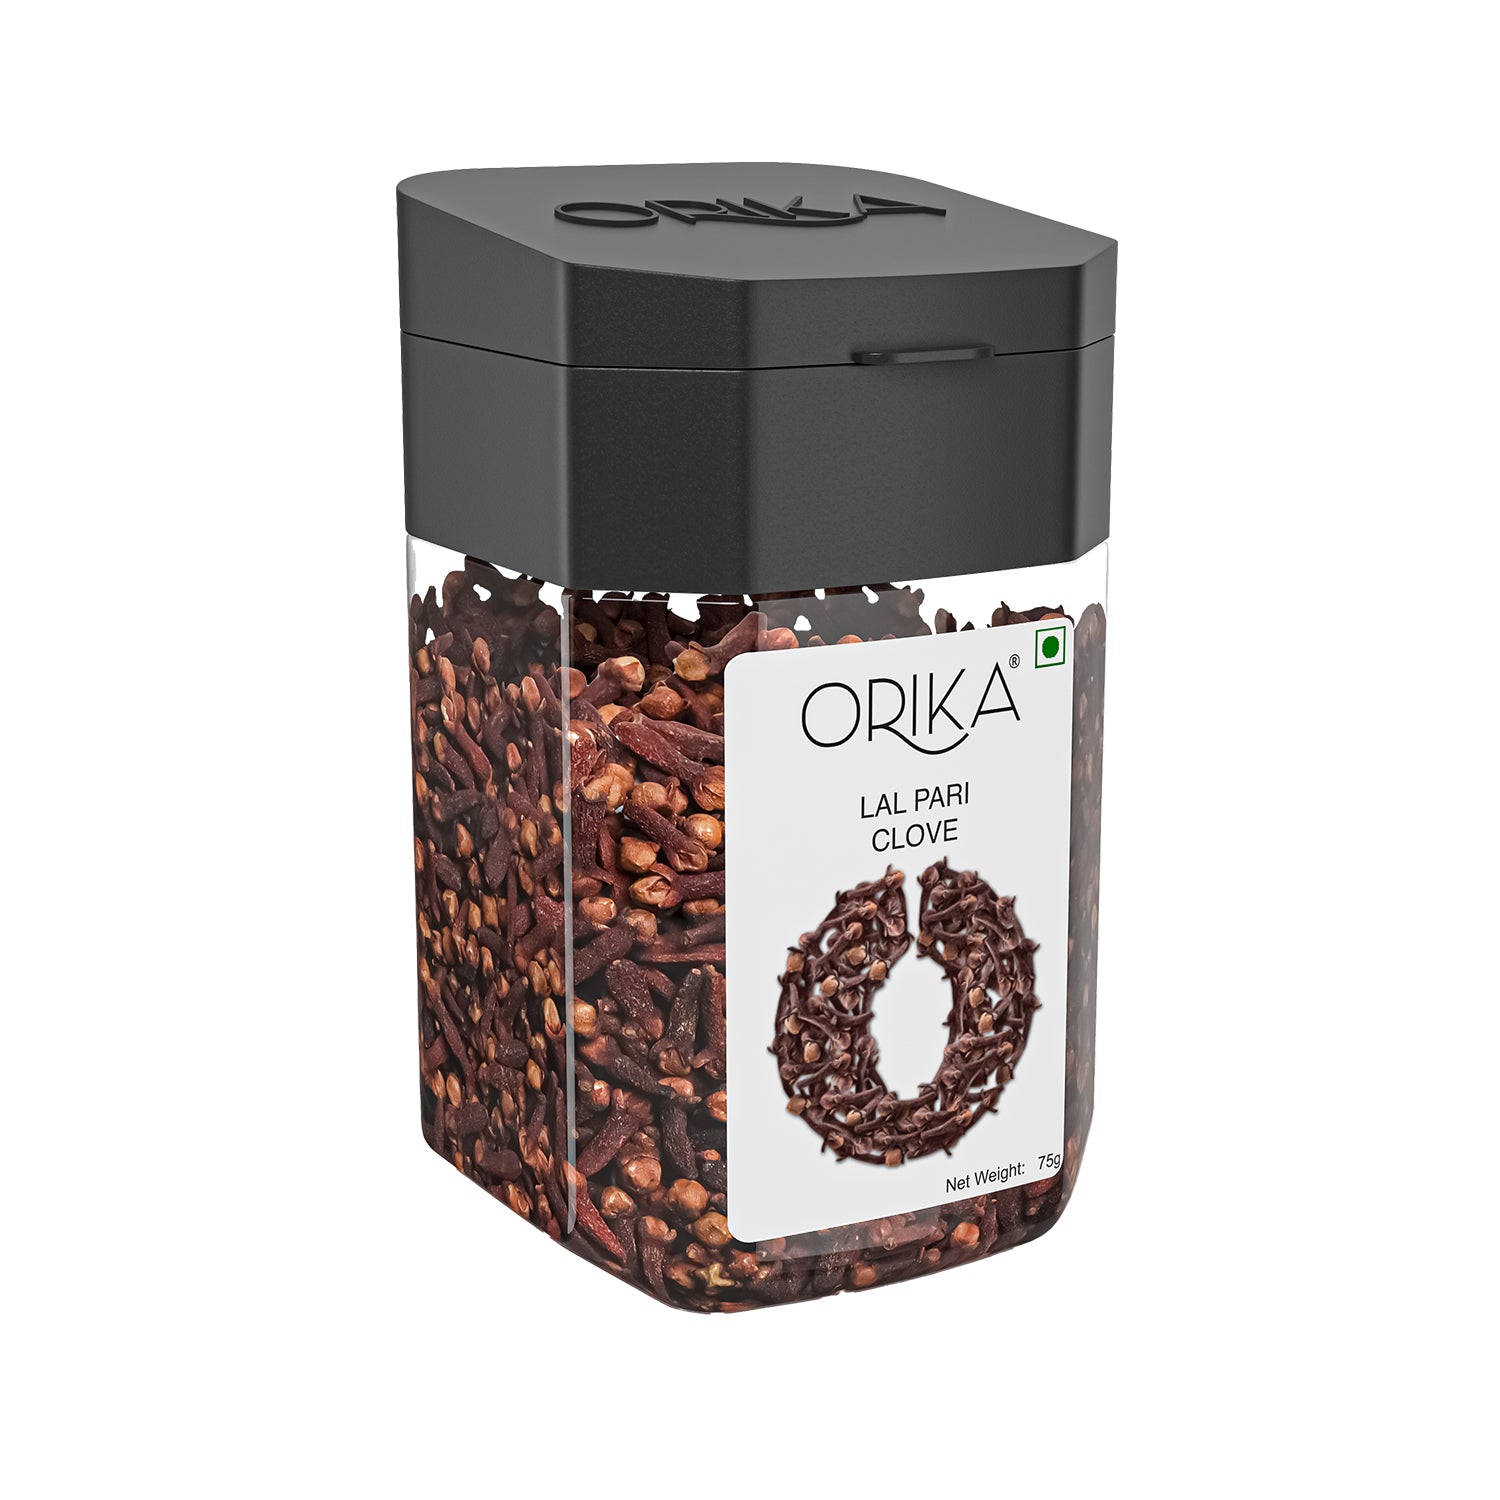 Orika's Lal Pari Clove Whole, 75g - Orika Spices India